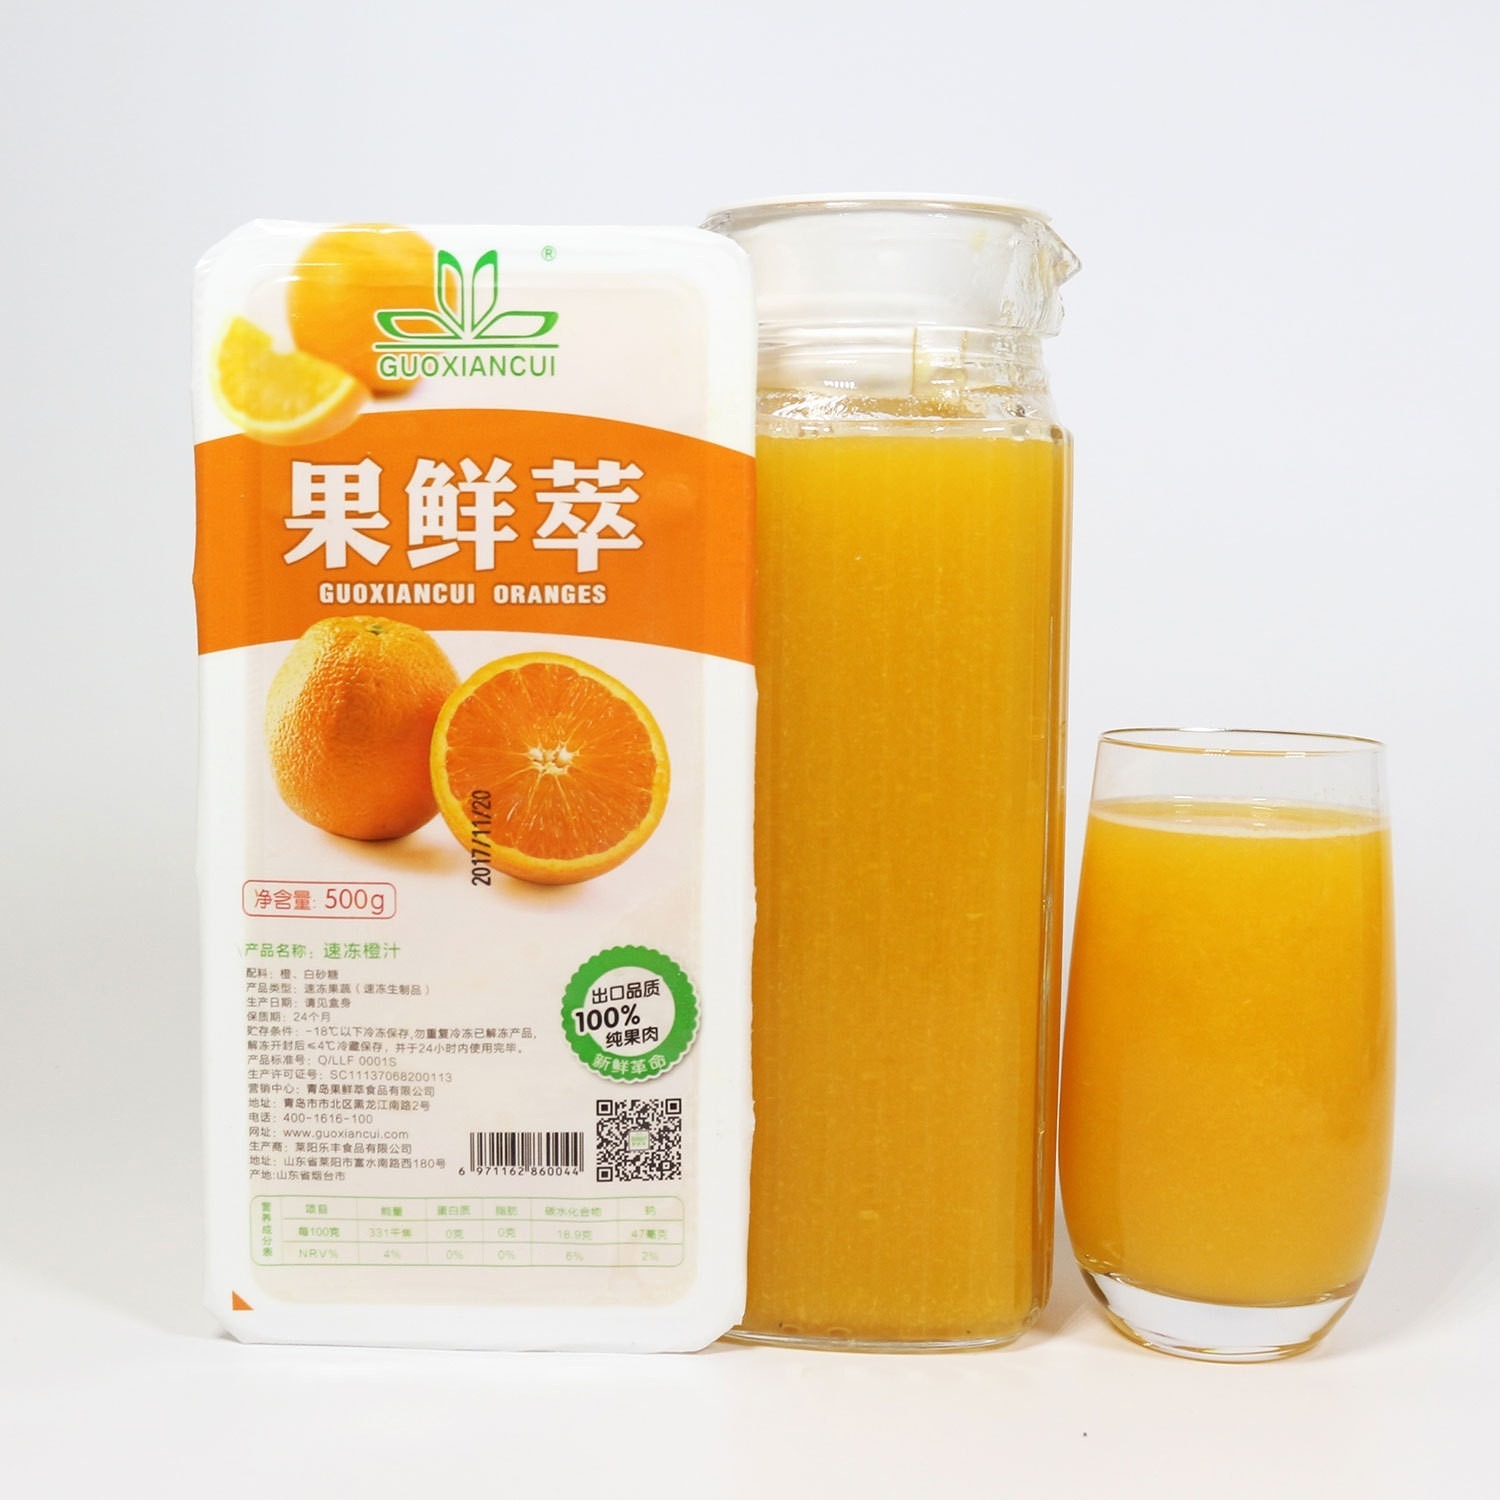 速冻甜橙 速冻橙汁 冷冻橙汁 甜橙汁 果鲜萃速冻果汁 圃丰食品 现榨果汁标准化产品